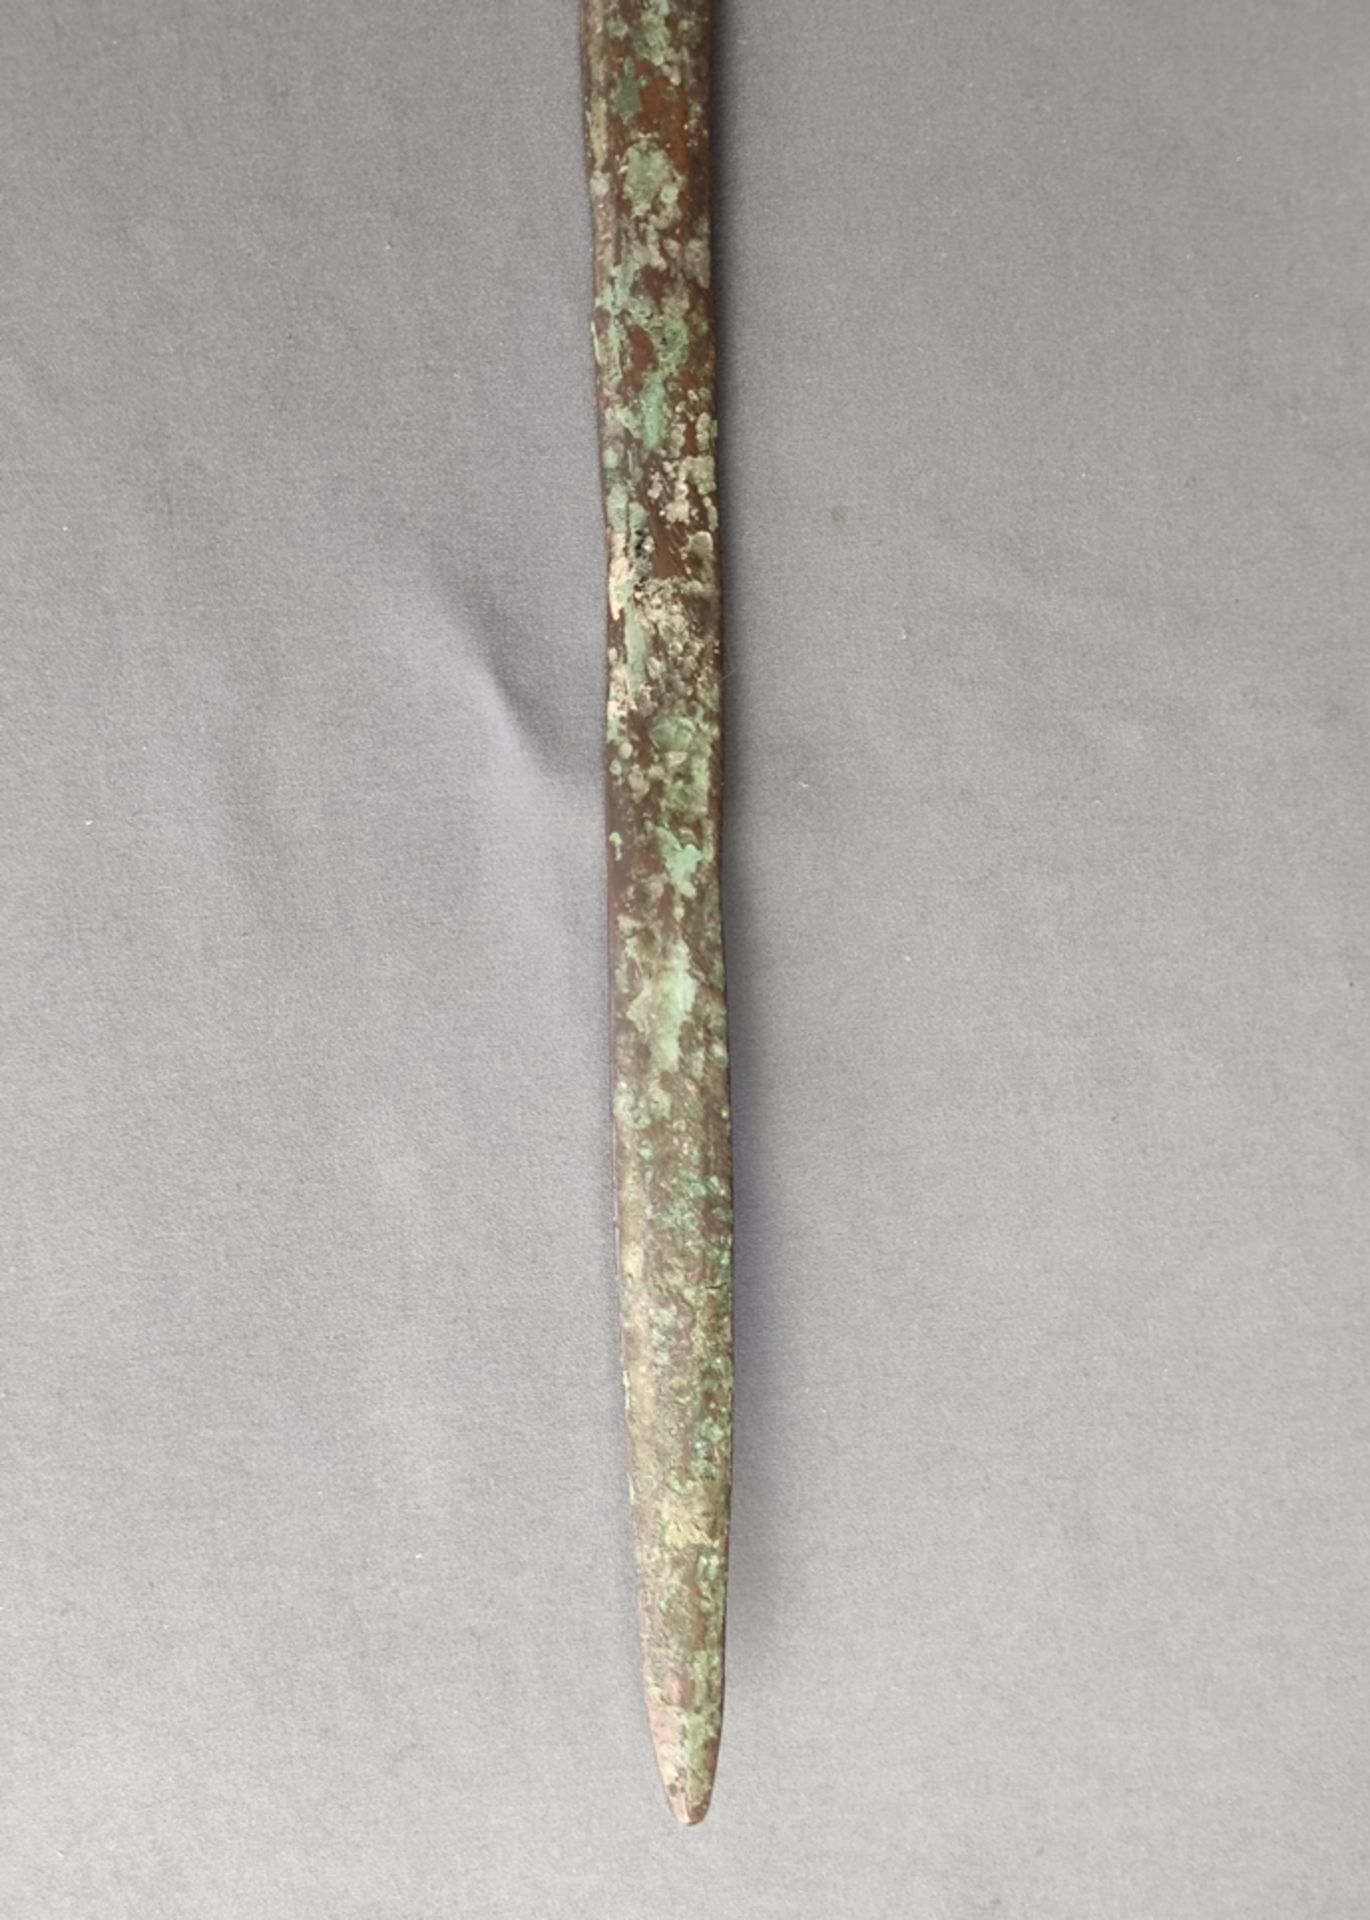 Historisches Kurzschwert, Bronze mit deutlicher Patina, zweischneidig, älter, L 77 cm, Klinge leich - Bild 2 aus 3